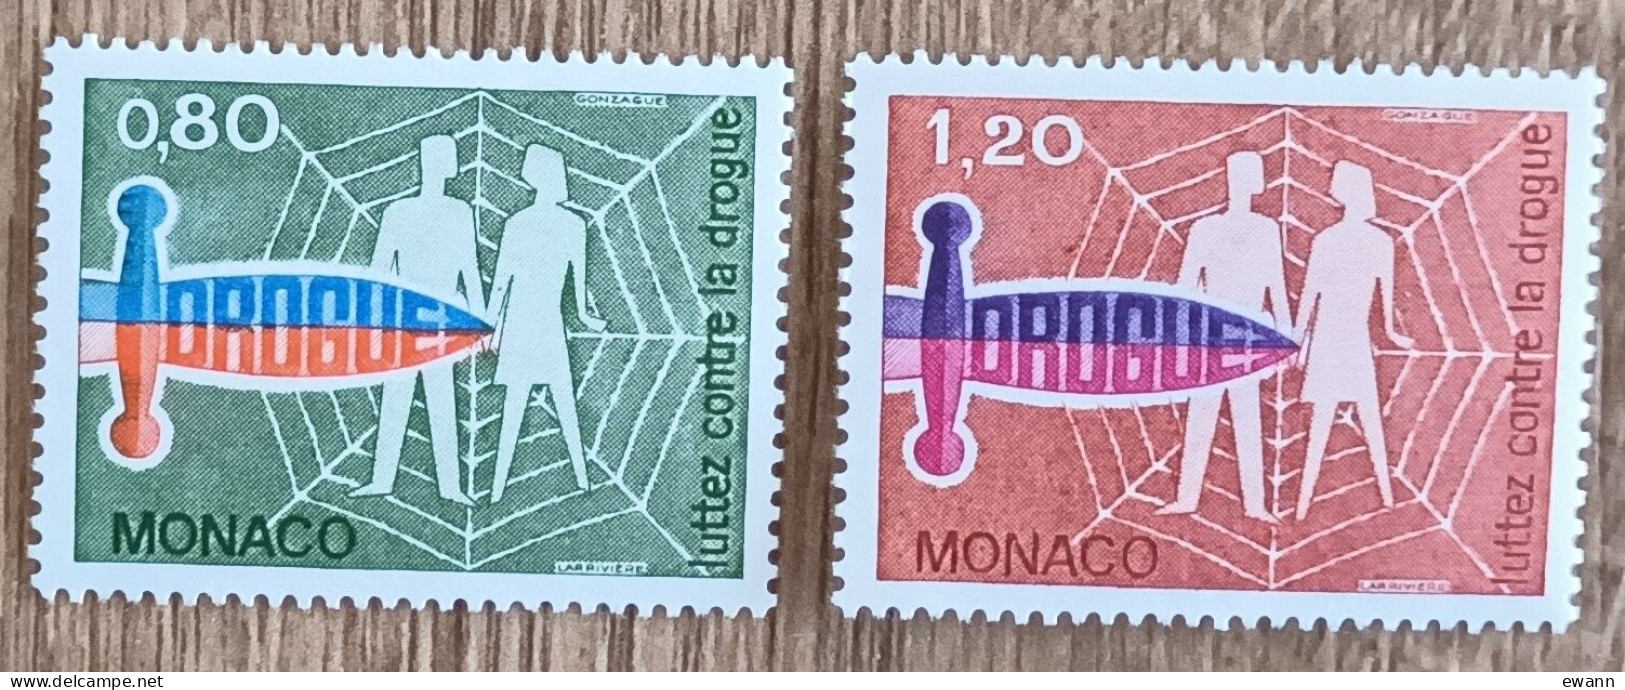 Monaco - YT N°1074, 1075 - Lutte Contre La Drogue - 1976 - Neuf - Unused Stamps